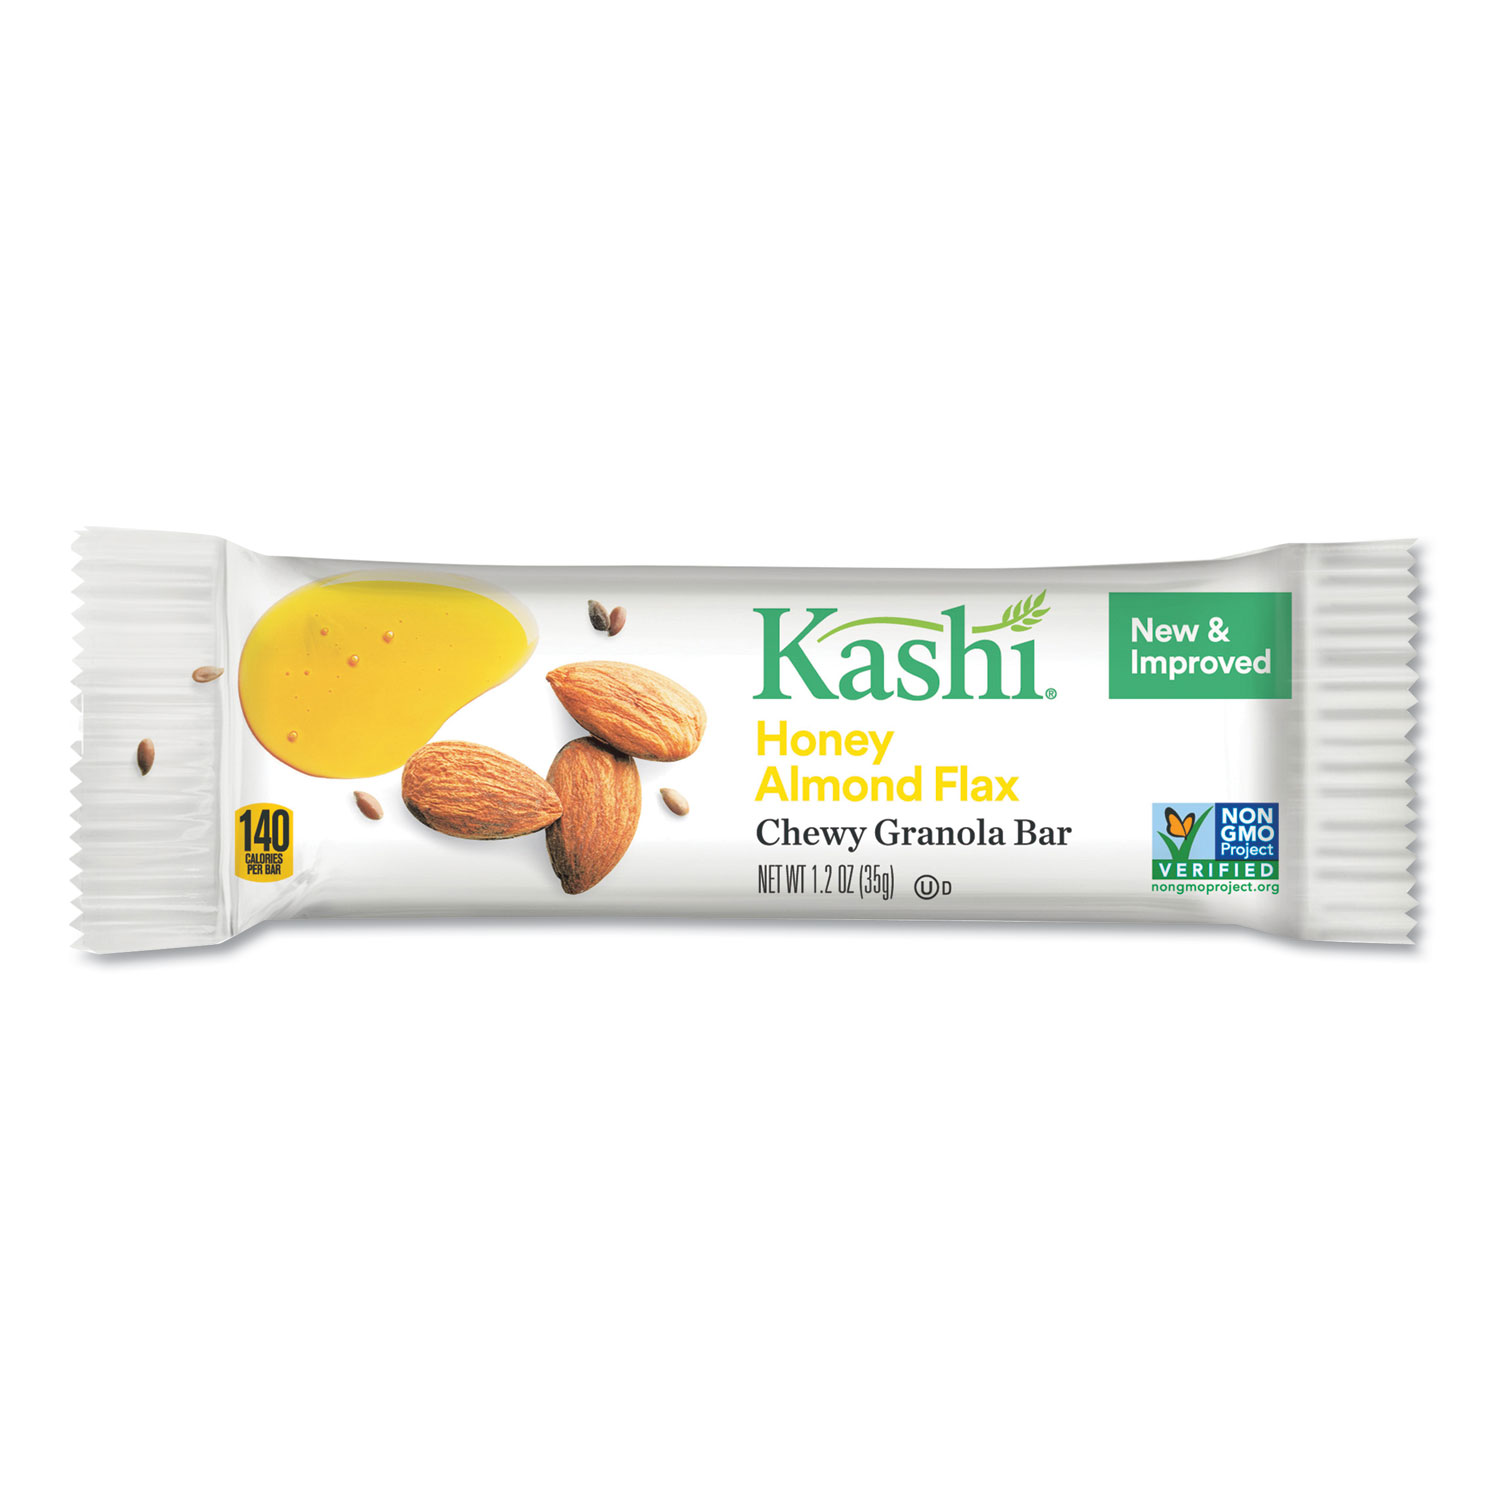  Kashi 1862737949 Kashi TLC Chewy Granola Bars, Honey Almond Flax, 35 g, 12/Box (KEB37949) 